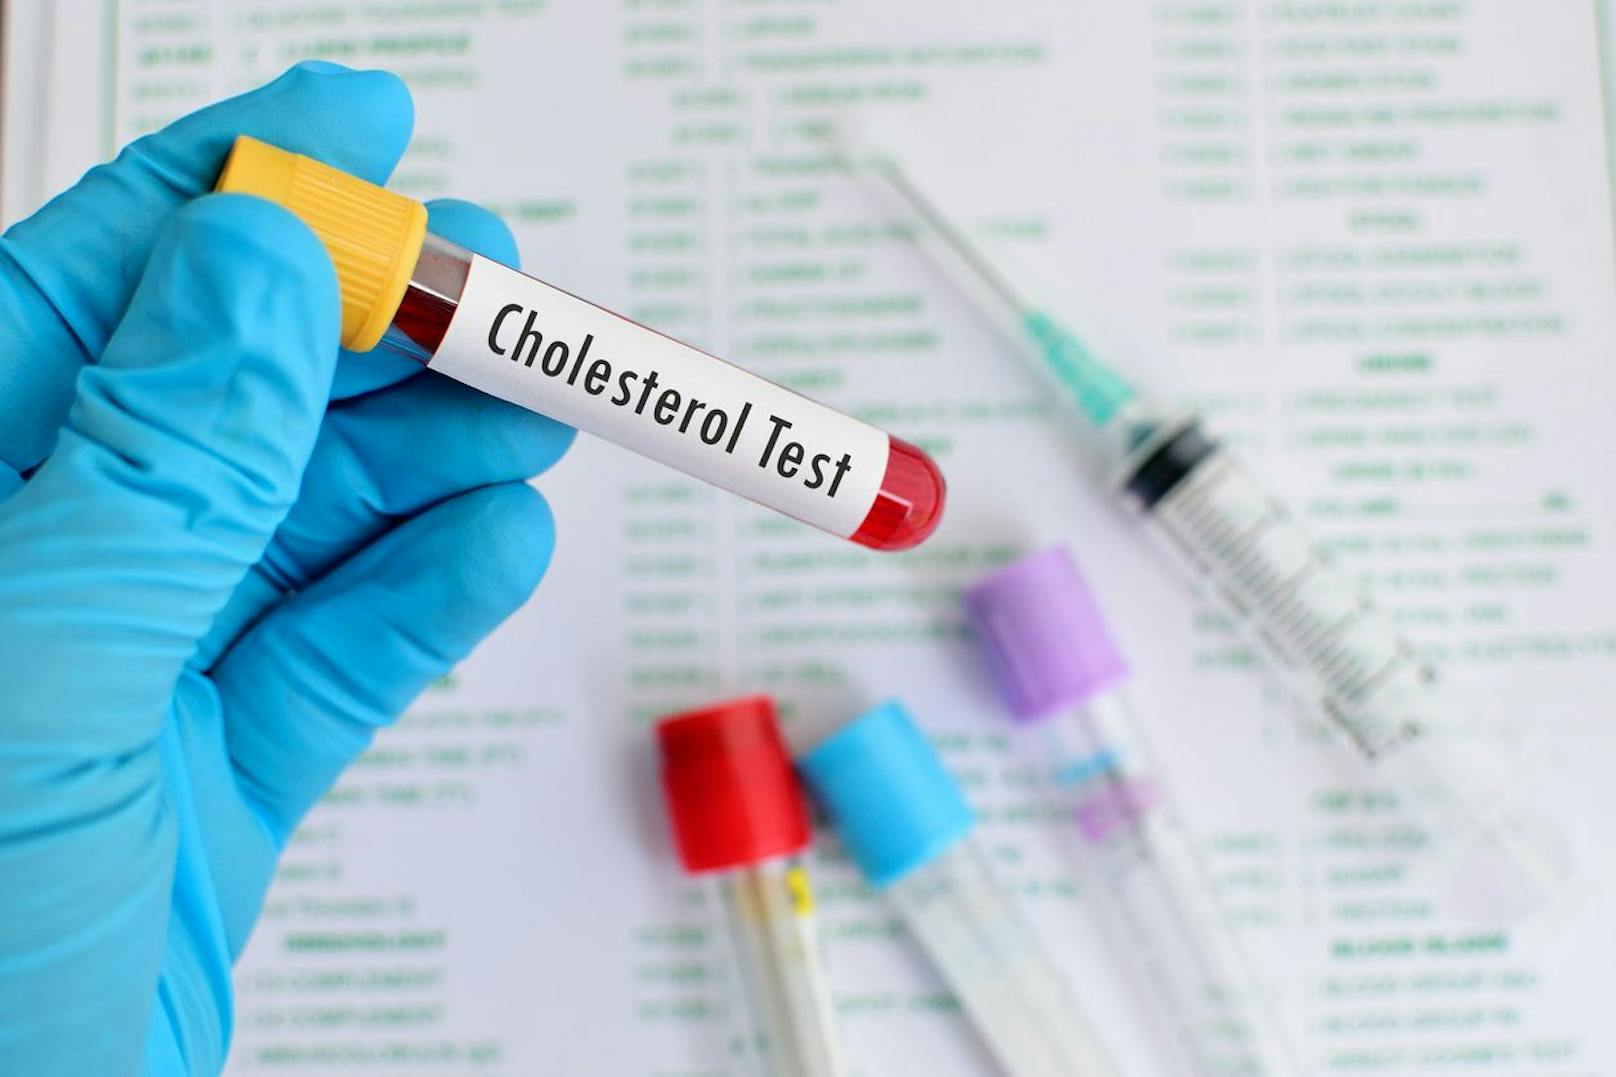 Eine simple Blutuntersuchung zeigt den Cholesterinwert und lässt gegebenenfalls gegensteuern, um ernsthafte Folgen zu verhindern.